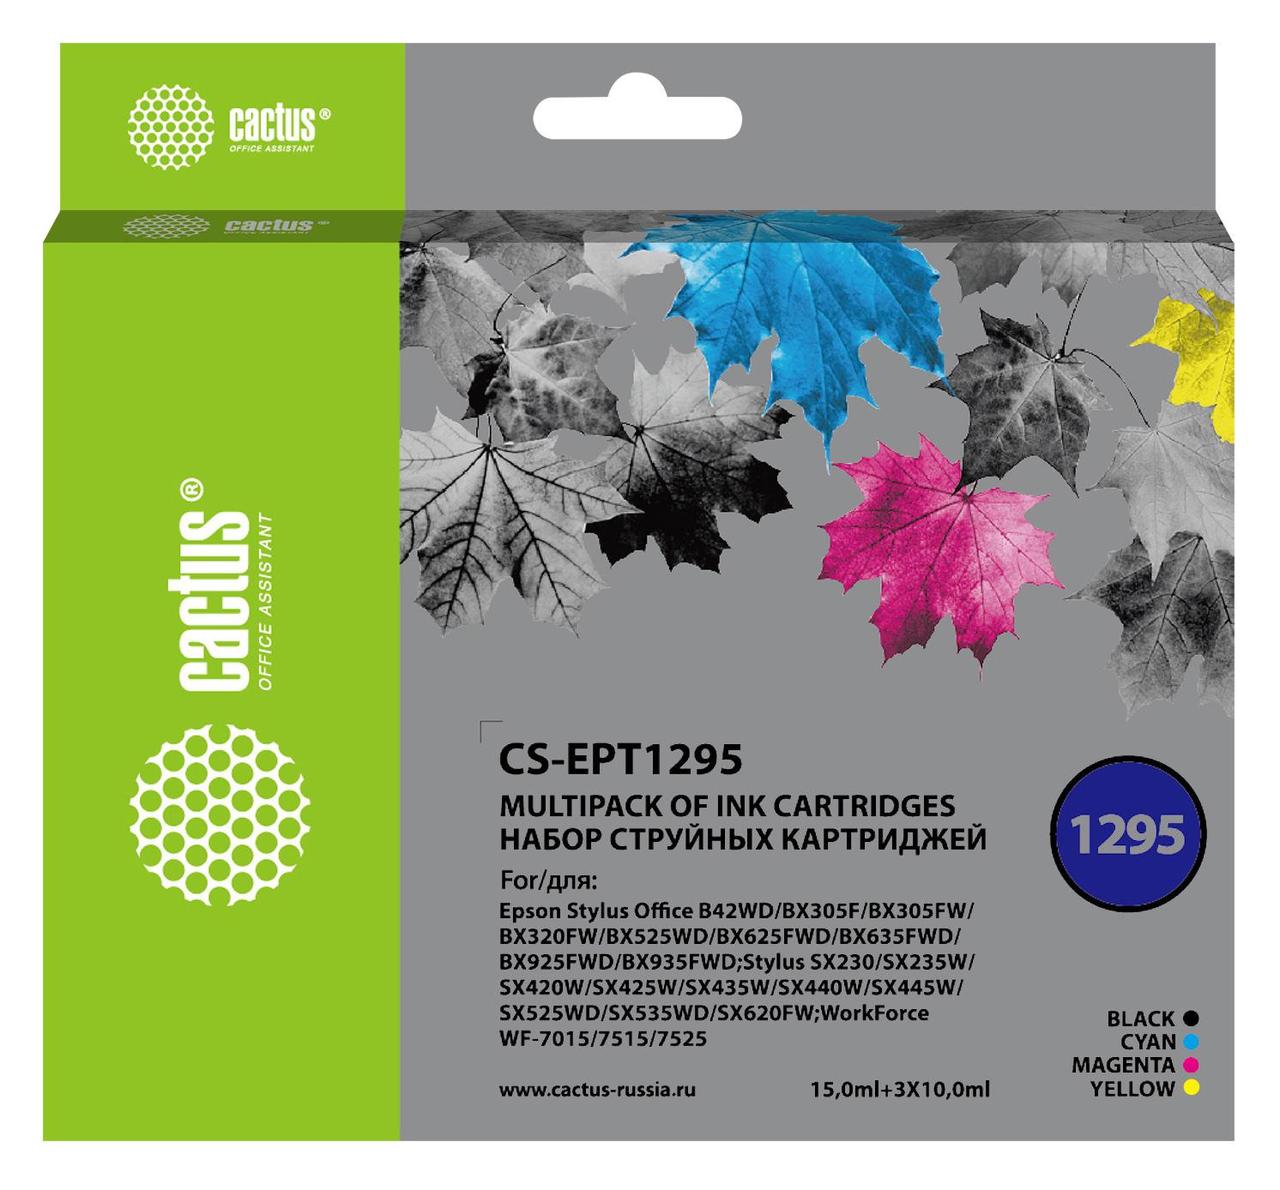 Картридж струйный Cactus CS-EPT1295 черный/голубой/желтый/пурпурный набор (45мл) для Epson Stylus Office